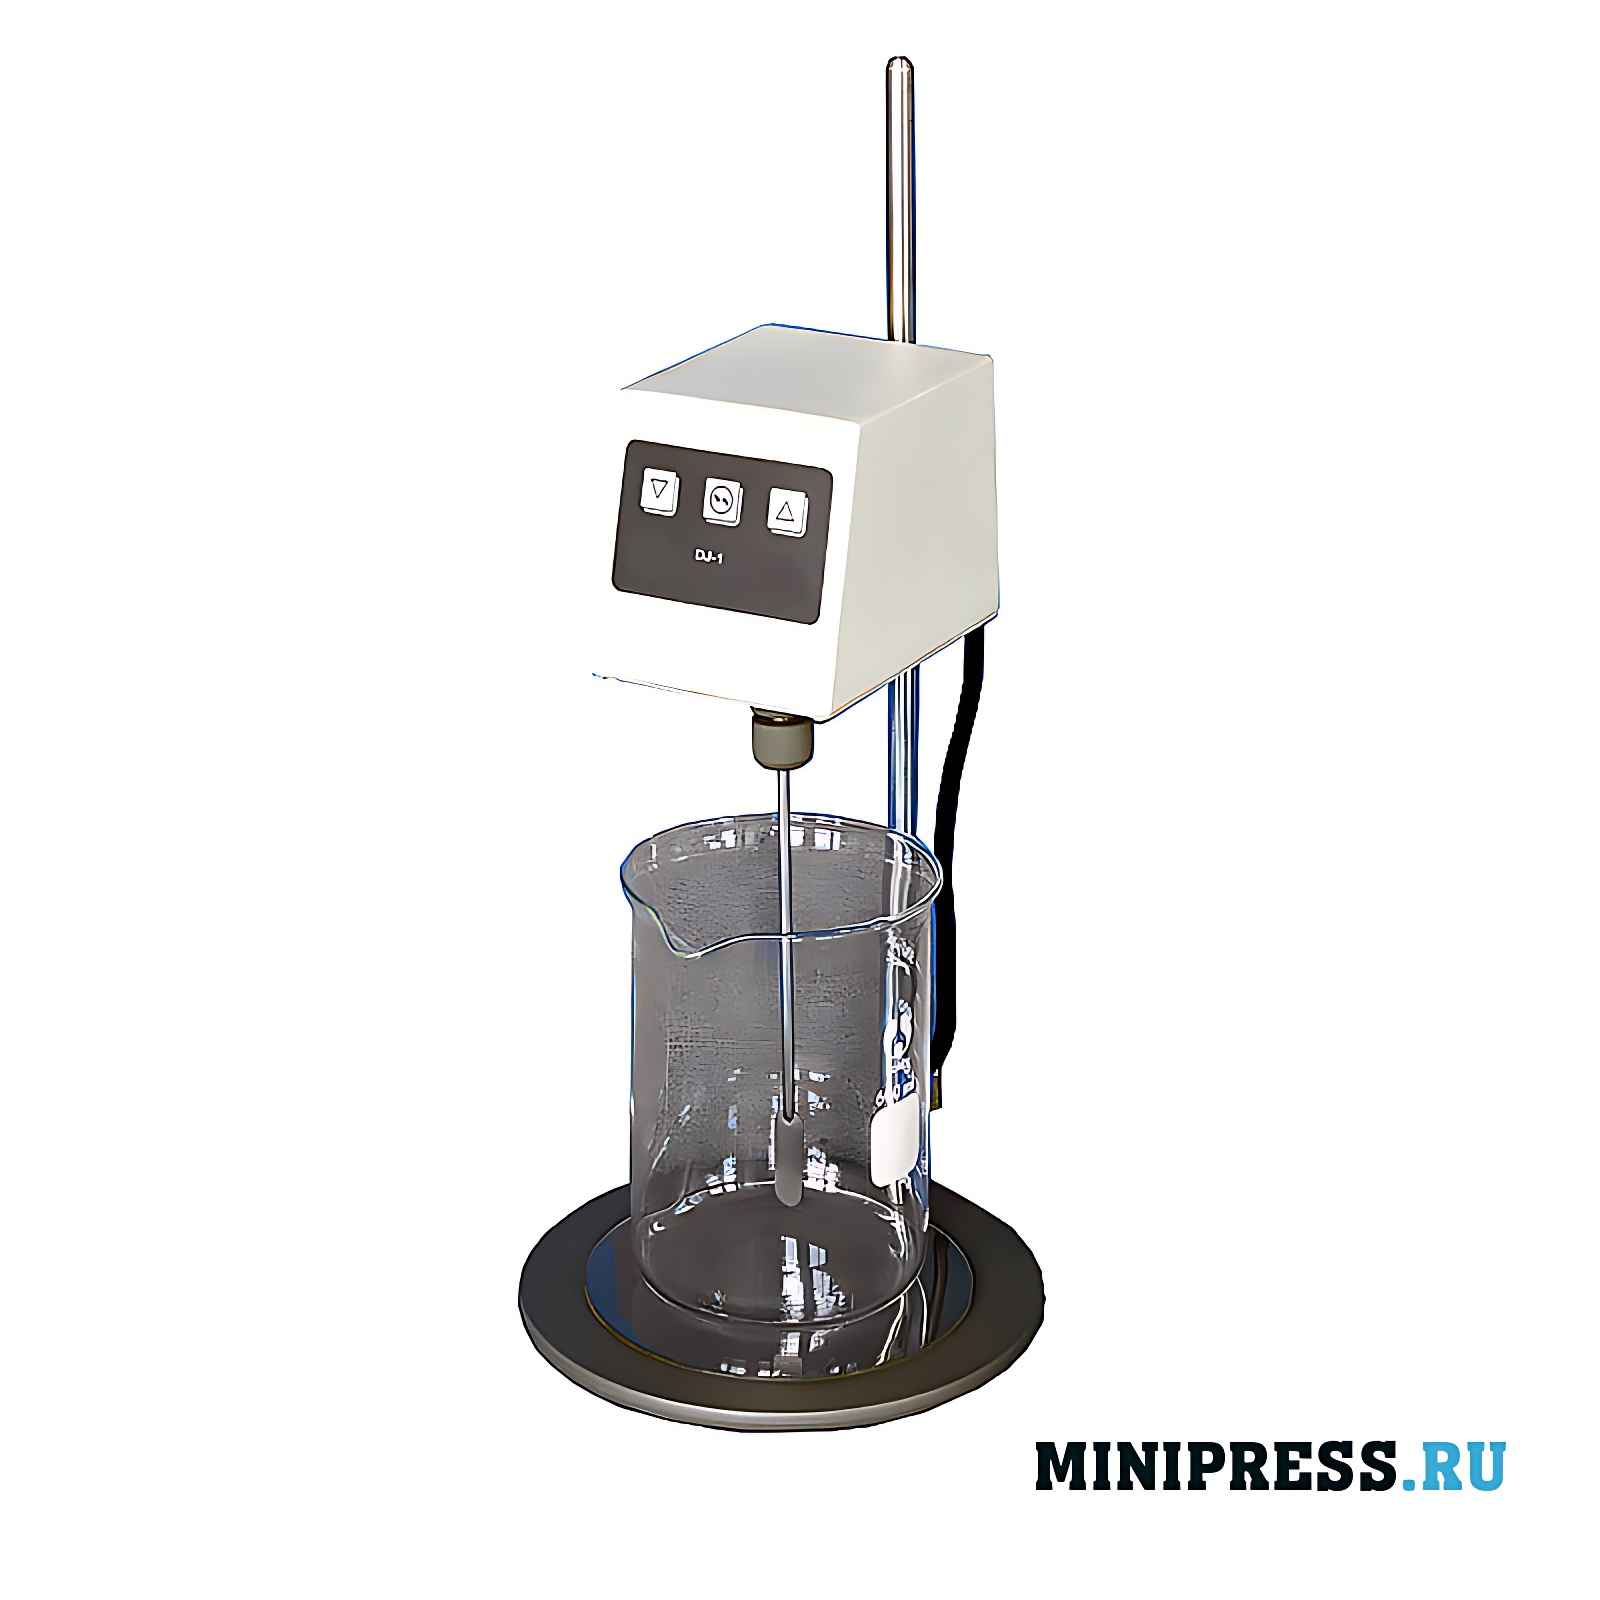 Оборудование для смешивания жидкости в условиях лаборатории